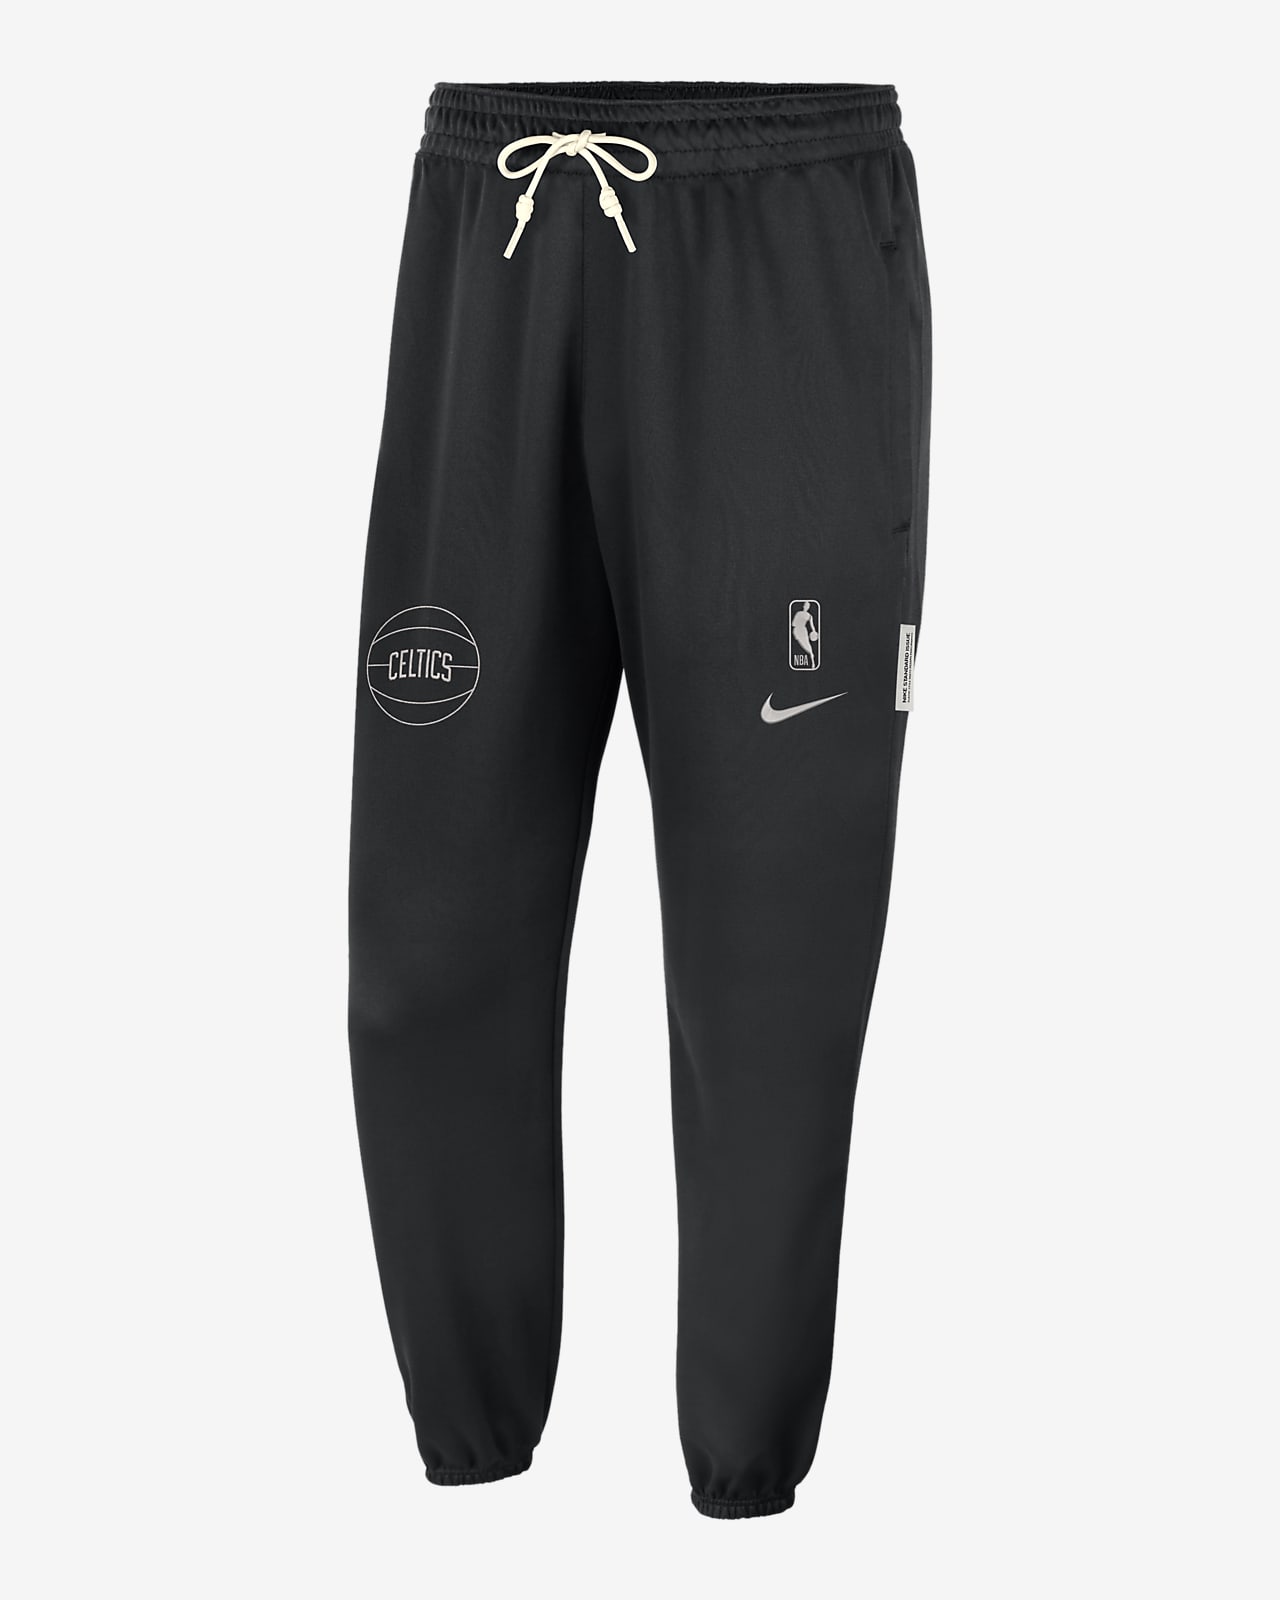 Boston Celtics Standard Issue Pantalons Nike Dri-FIT NBA - Home